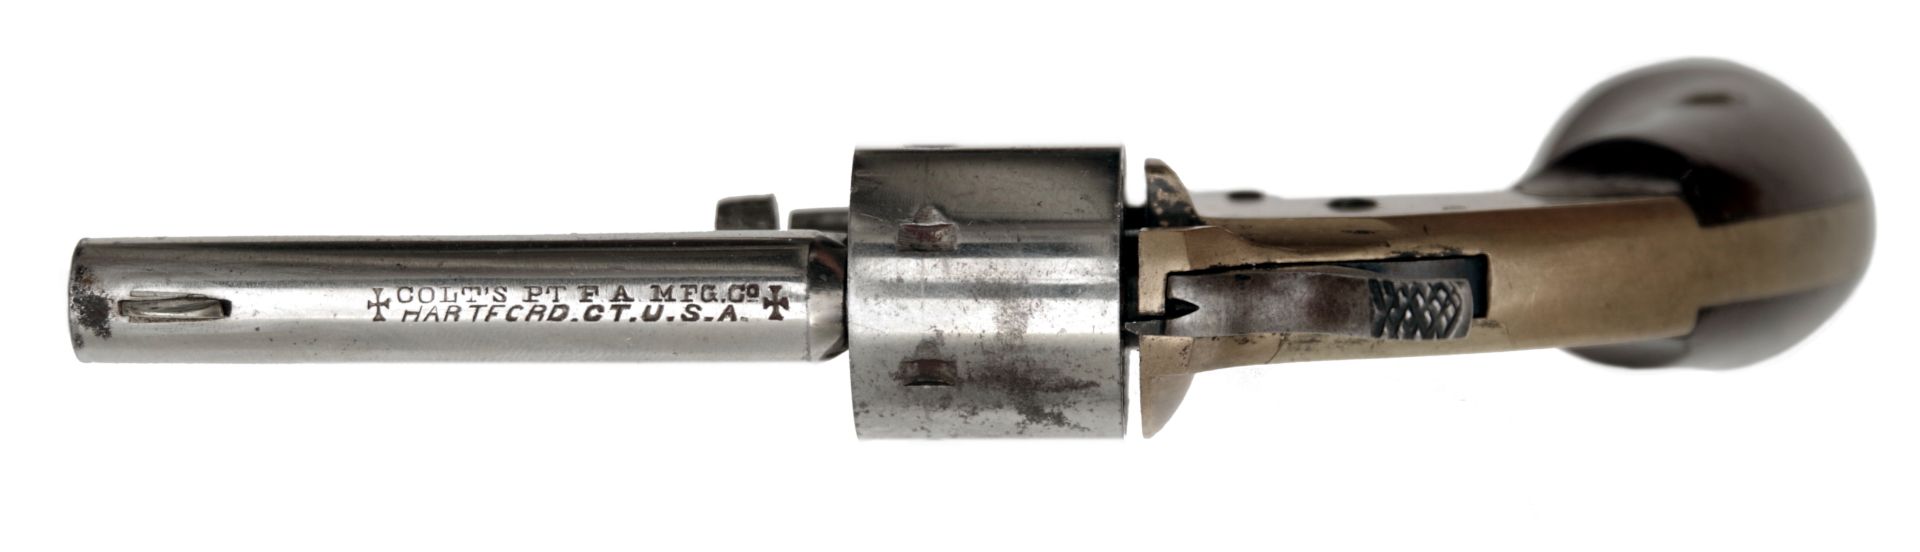 A Colt Open Top Pocket Model Revolver - Bild 3 aus 3